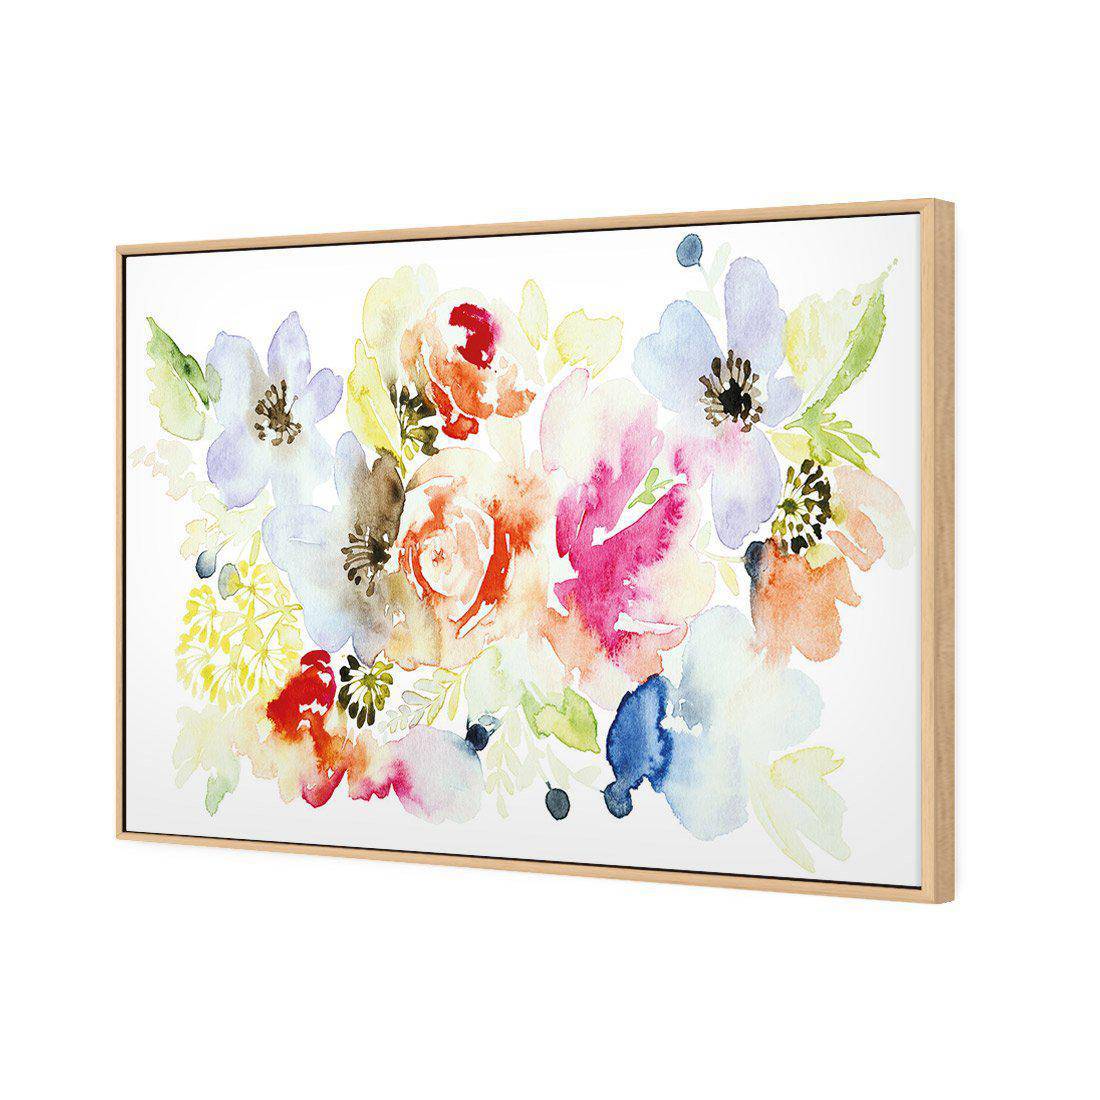 Floral Array Canvas Art-Canvas-Wall Art Designs-45x30cm-Canvas - Oak Frame-Wall Art Designs